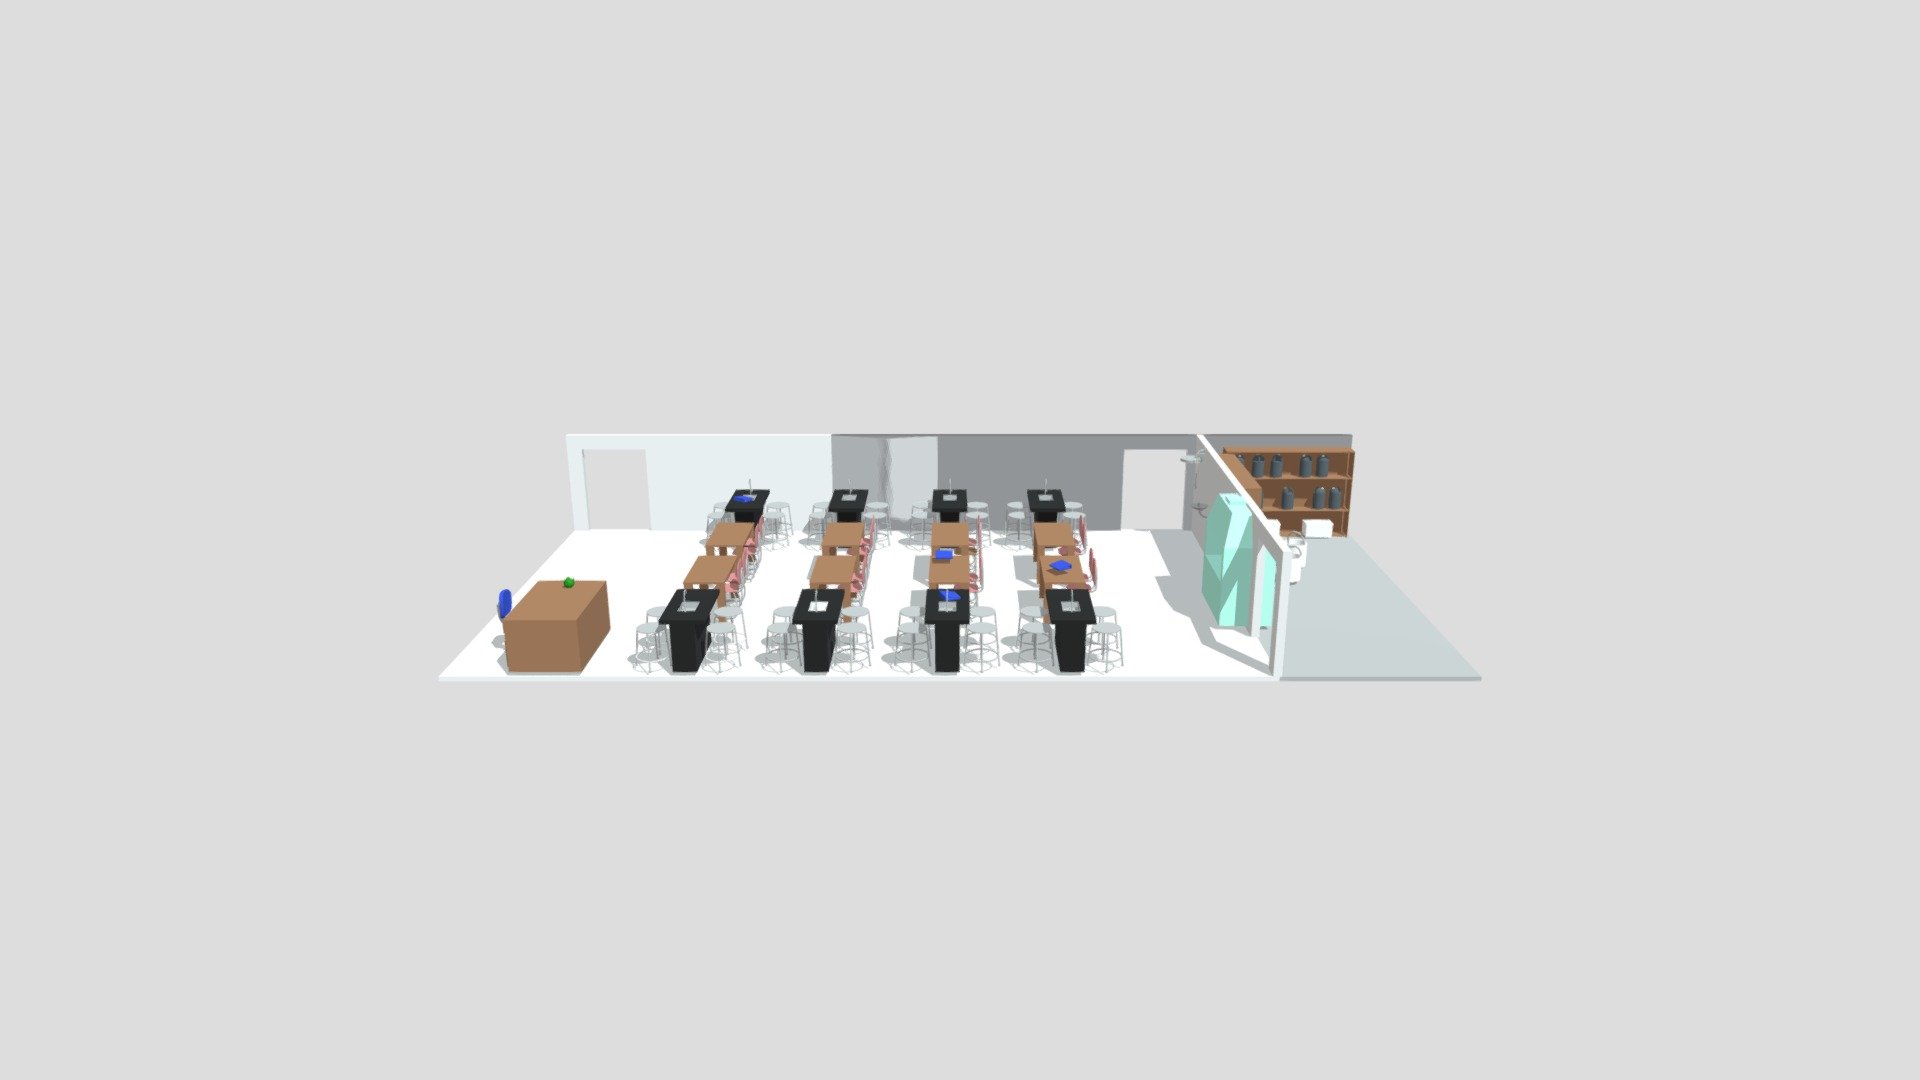 Classroom - 3D model by KBN 3d model